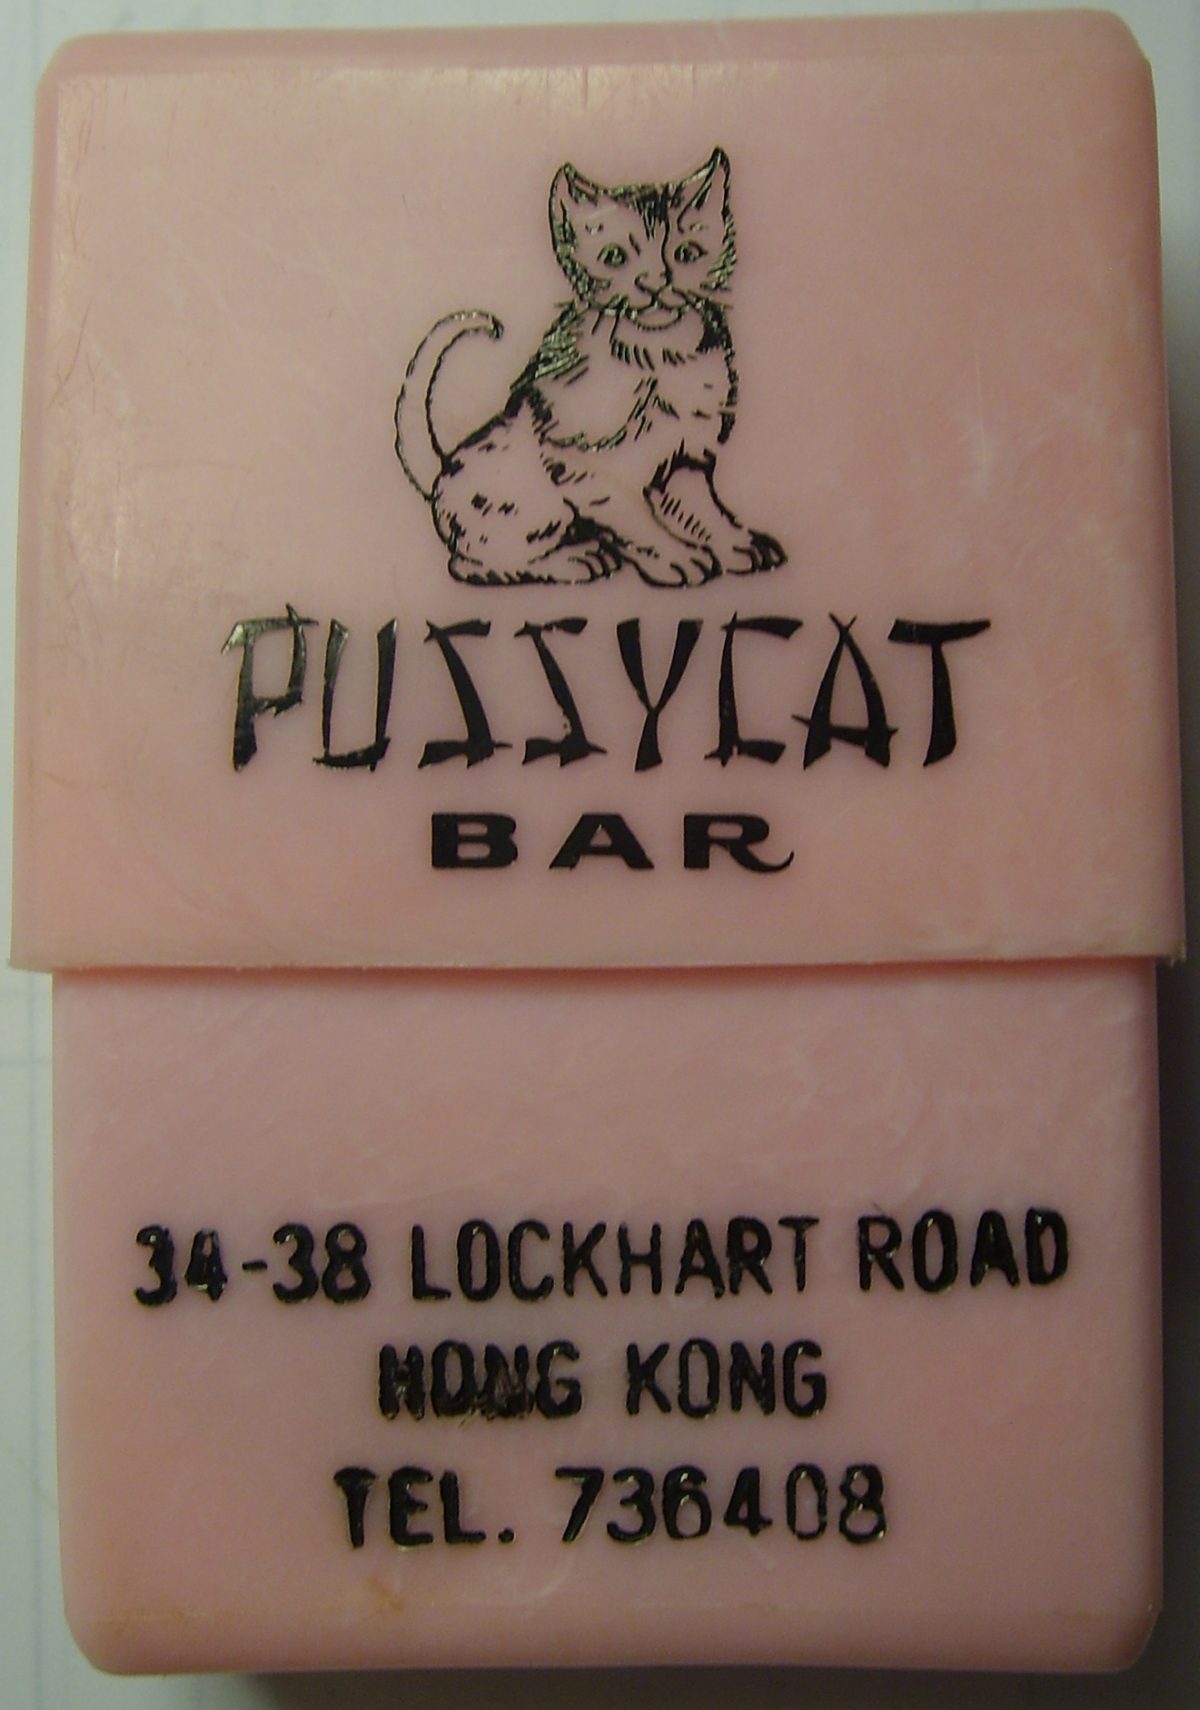 wanchai bars hong kong 1970s1960 cards